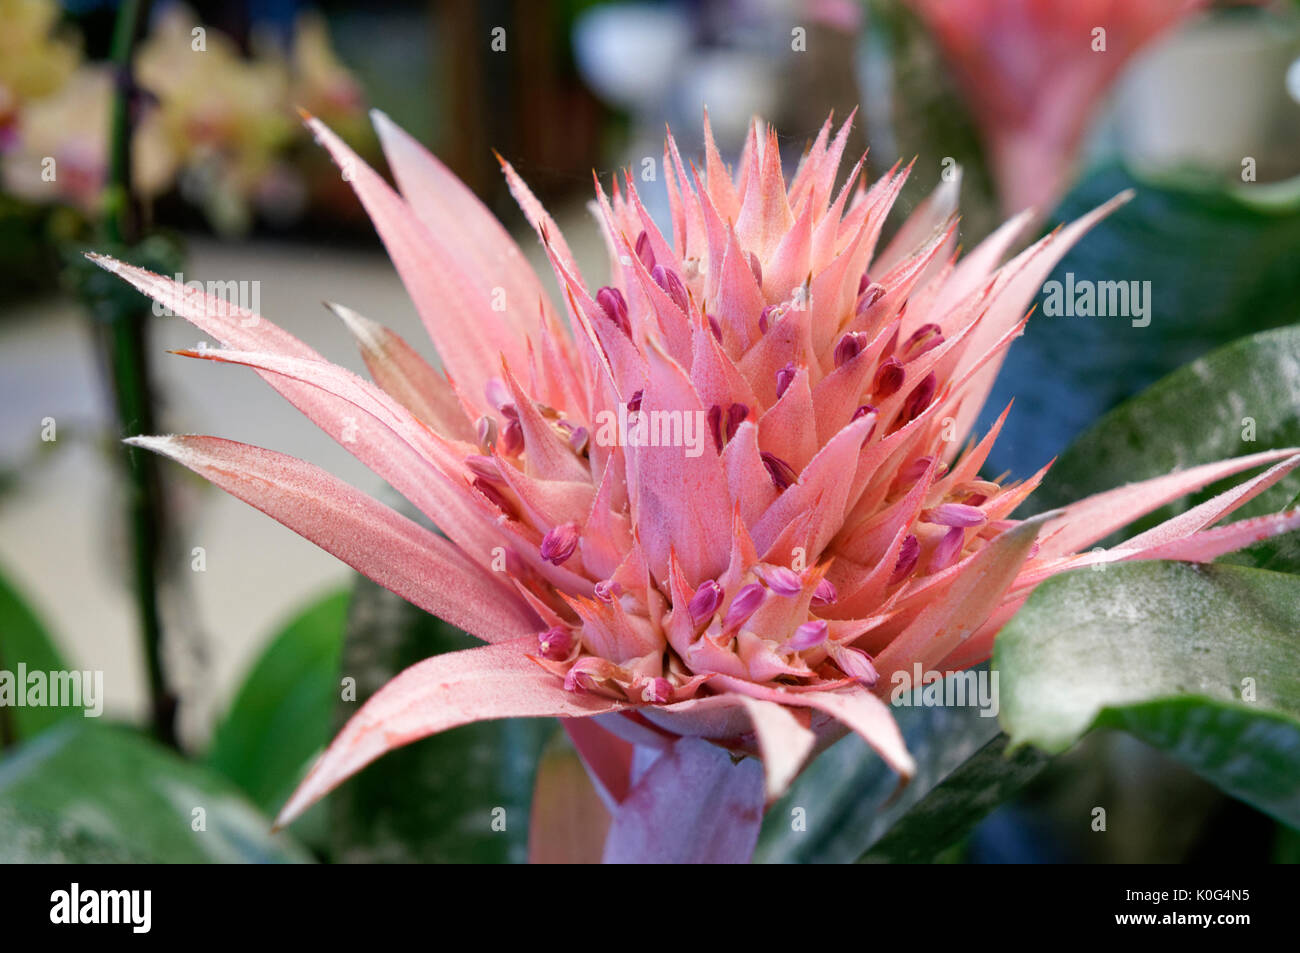 Close-up of a fasciata plant flower or Aechmea fasciata Stock Photo